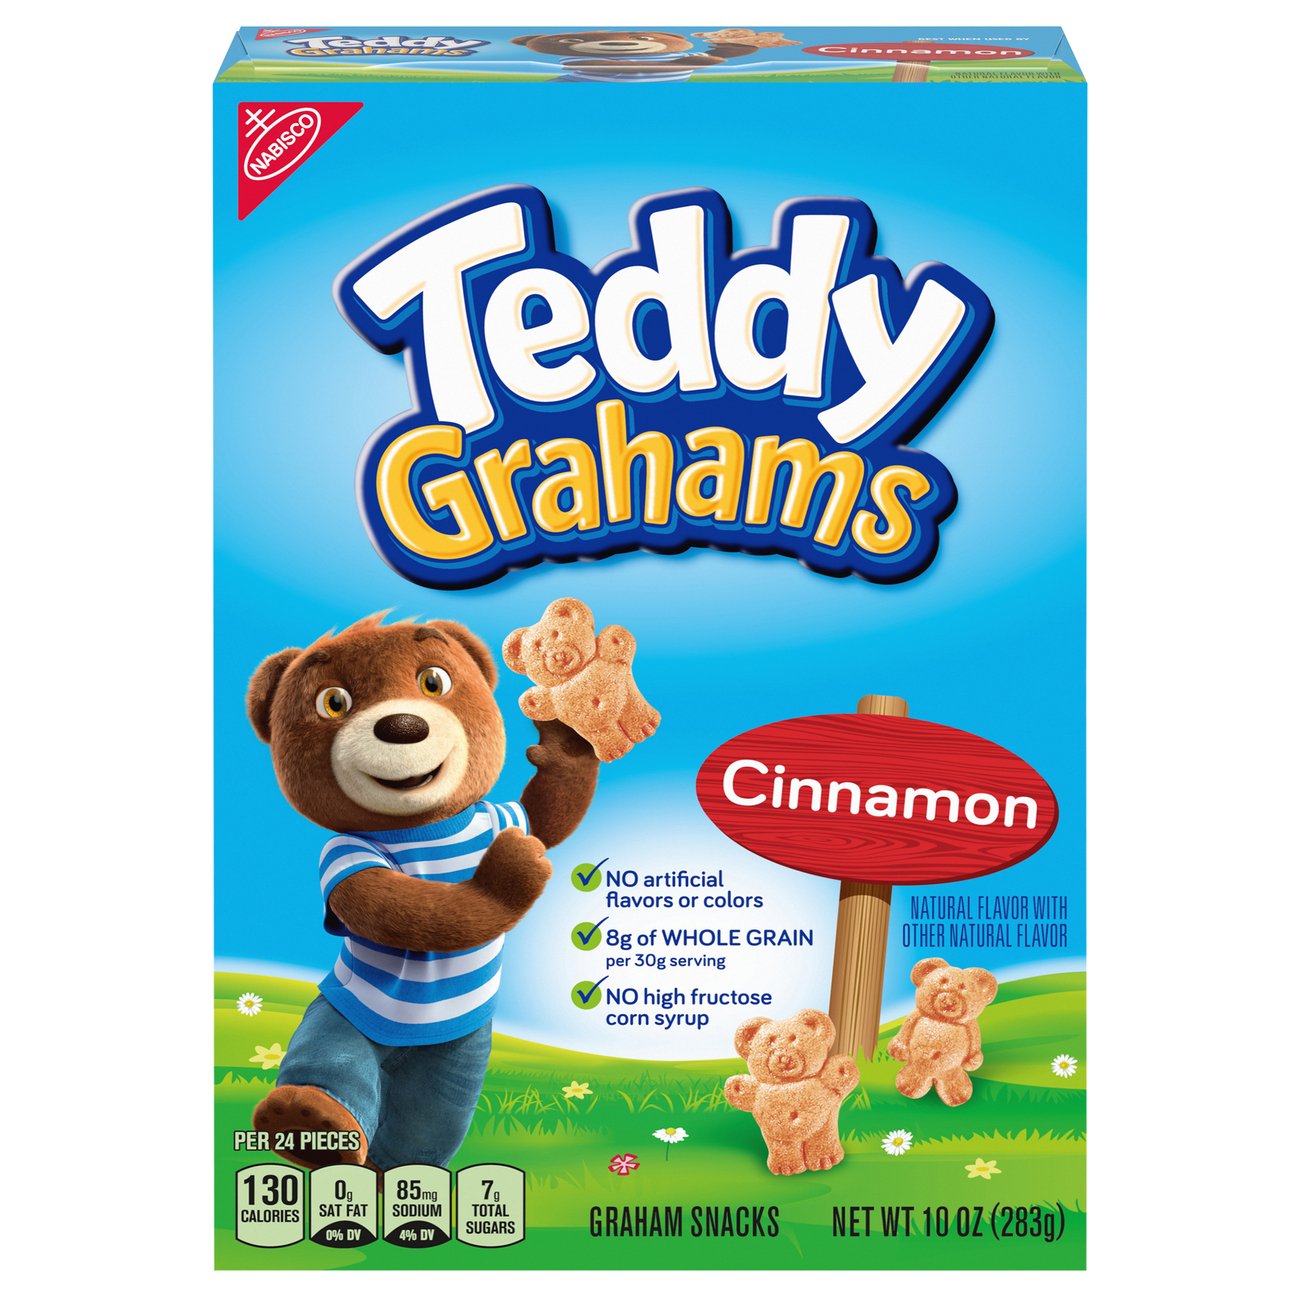 teddy grahams